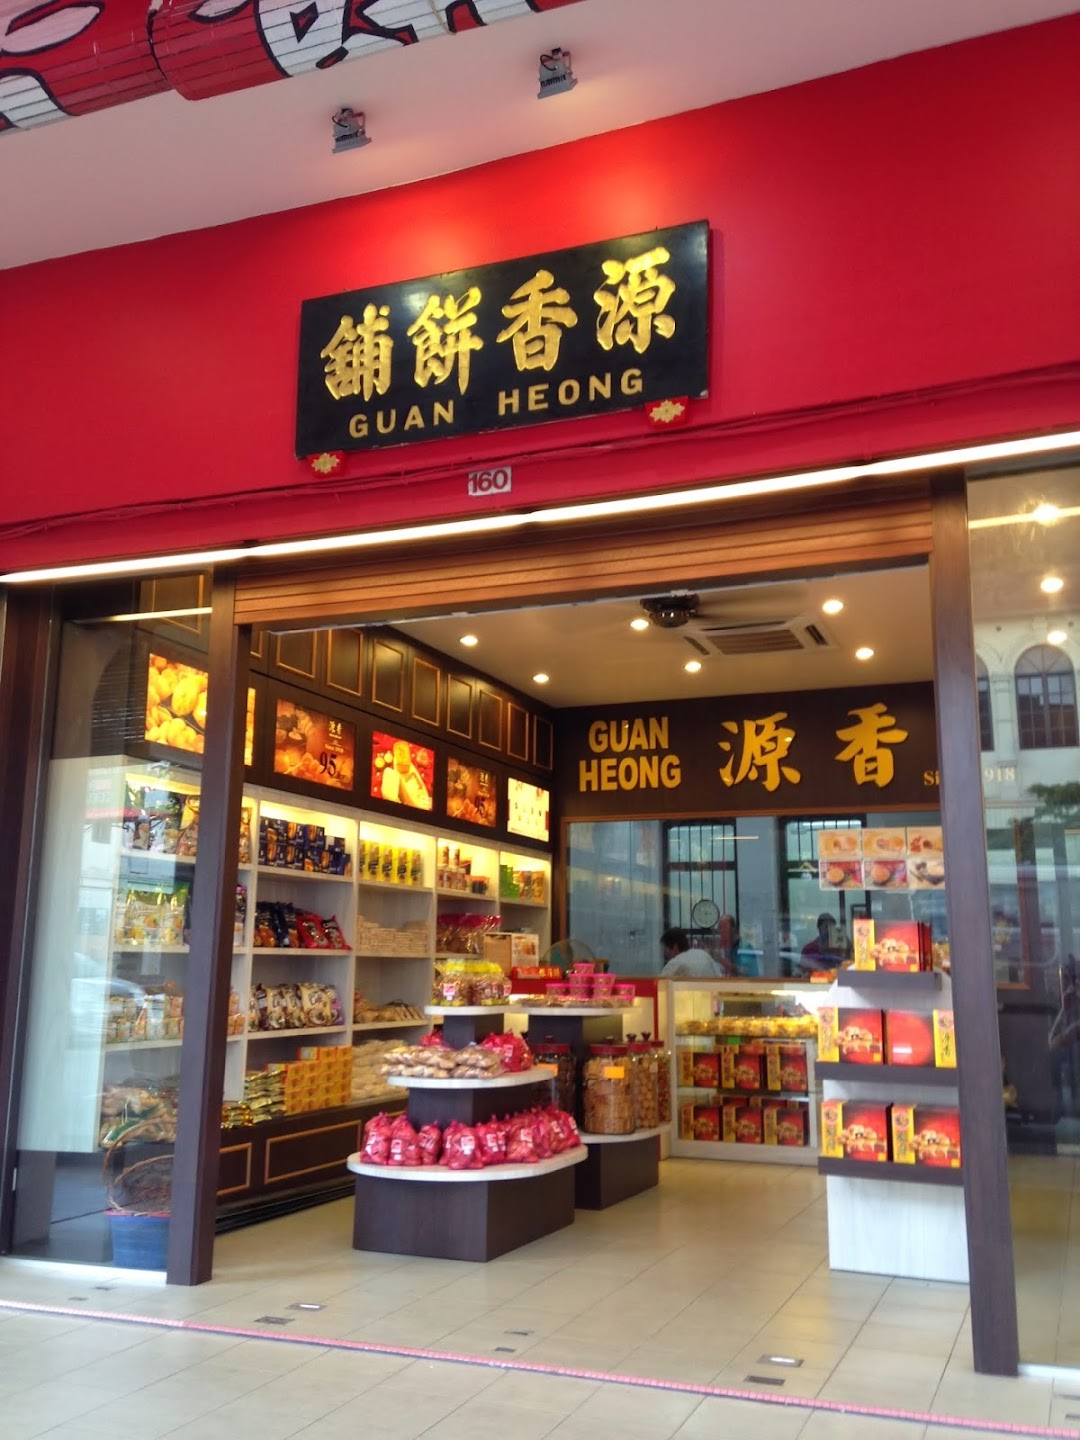  Guan Heong Biscuit Shop